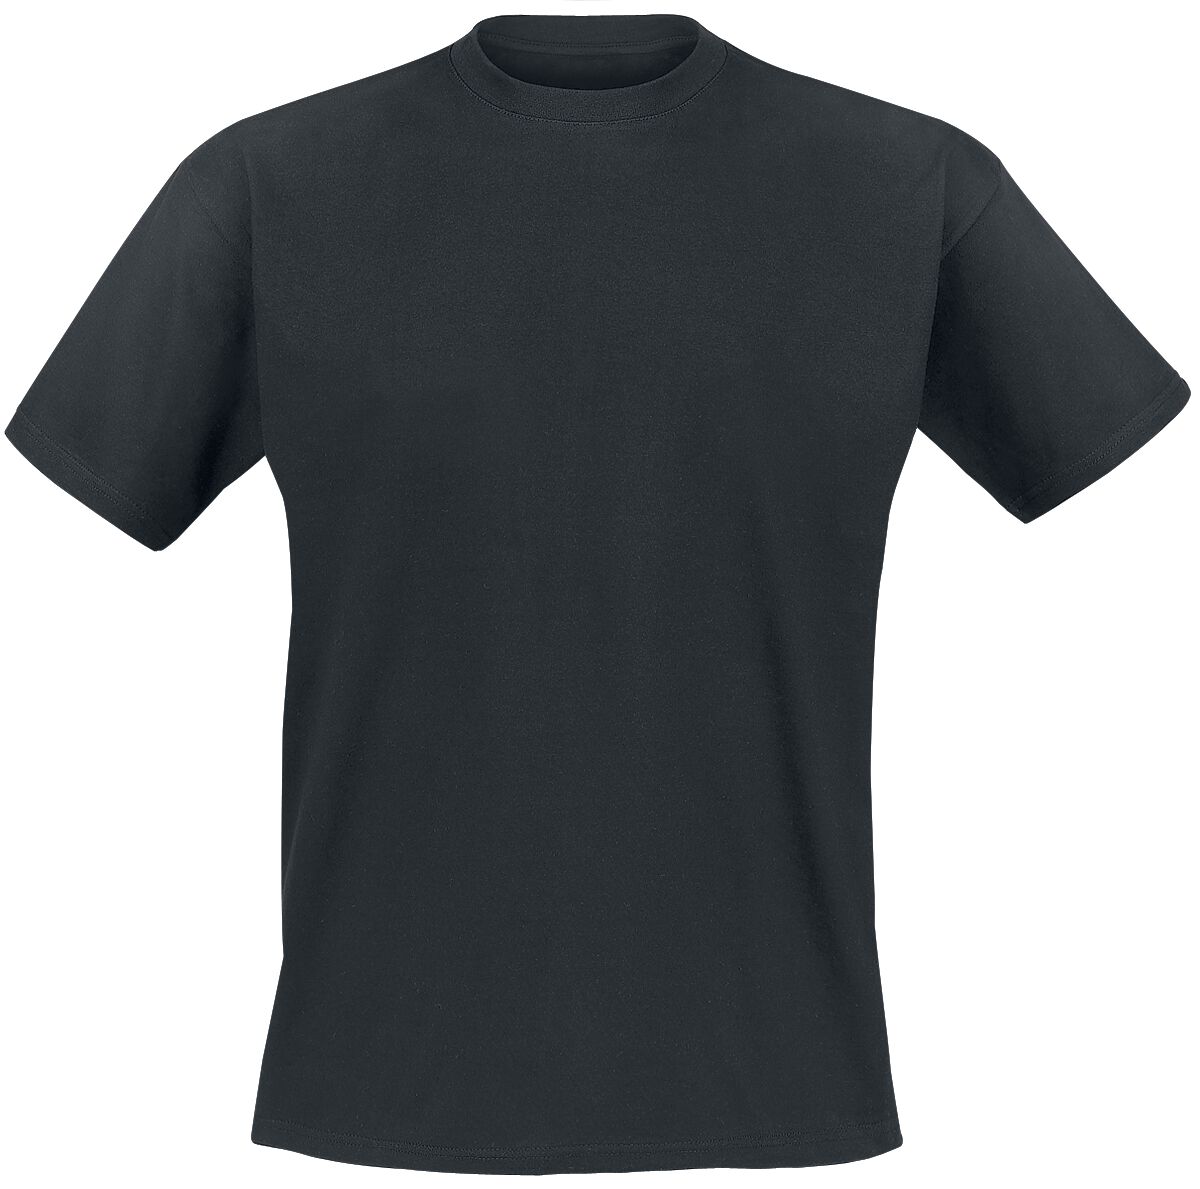 Genesis T-Shirt - Mad Hatter - S bis XXL - für Männer - Größe XXL - schwarz  - EMP exklusives Merchandise!